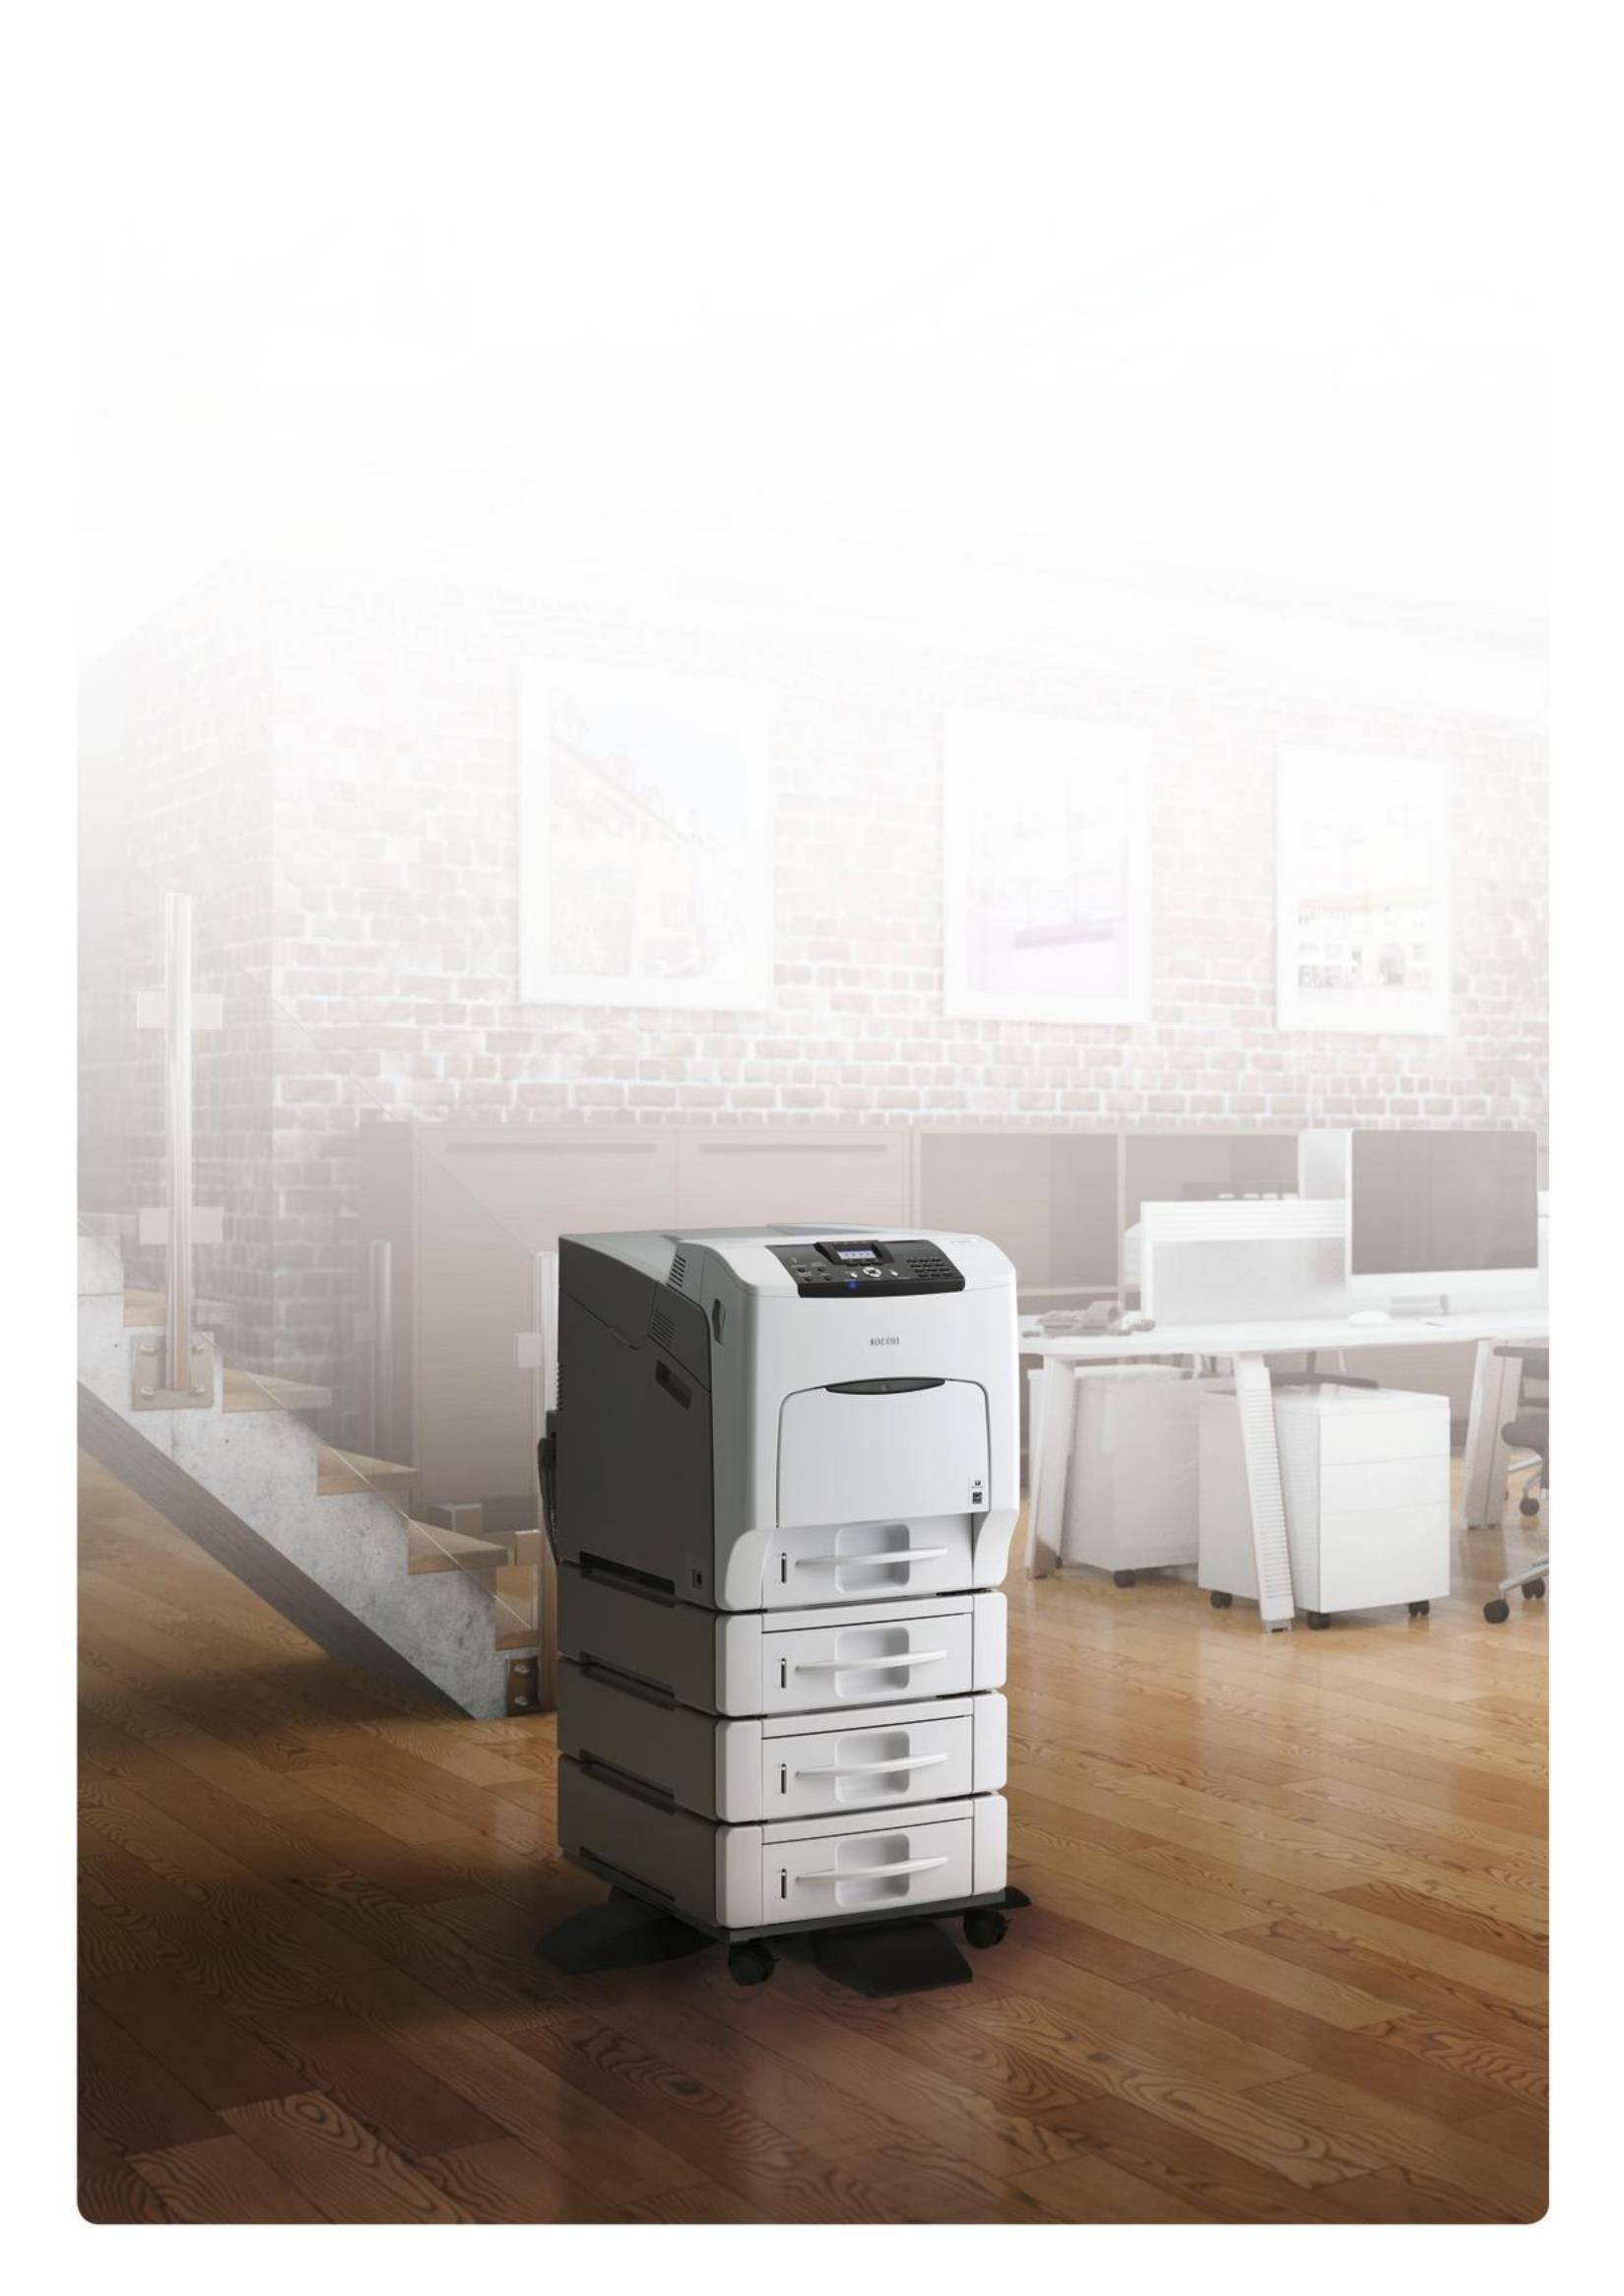 La stampante a colori che semplifica il lavoro Ricoh è la stampante a colori ideale per l'ufficio. È un dispositivo innovativo dotato di tutte le funzioni per lavorare meglio e ridurre i costi.